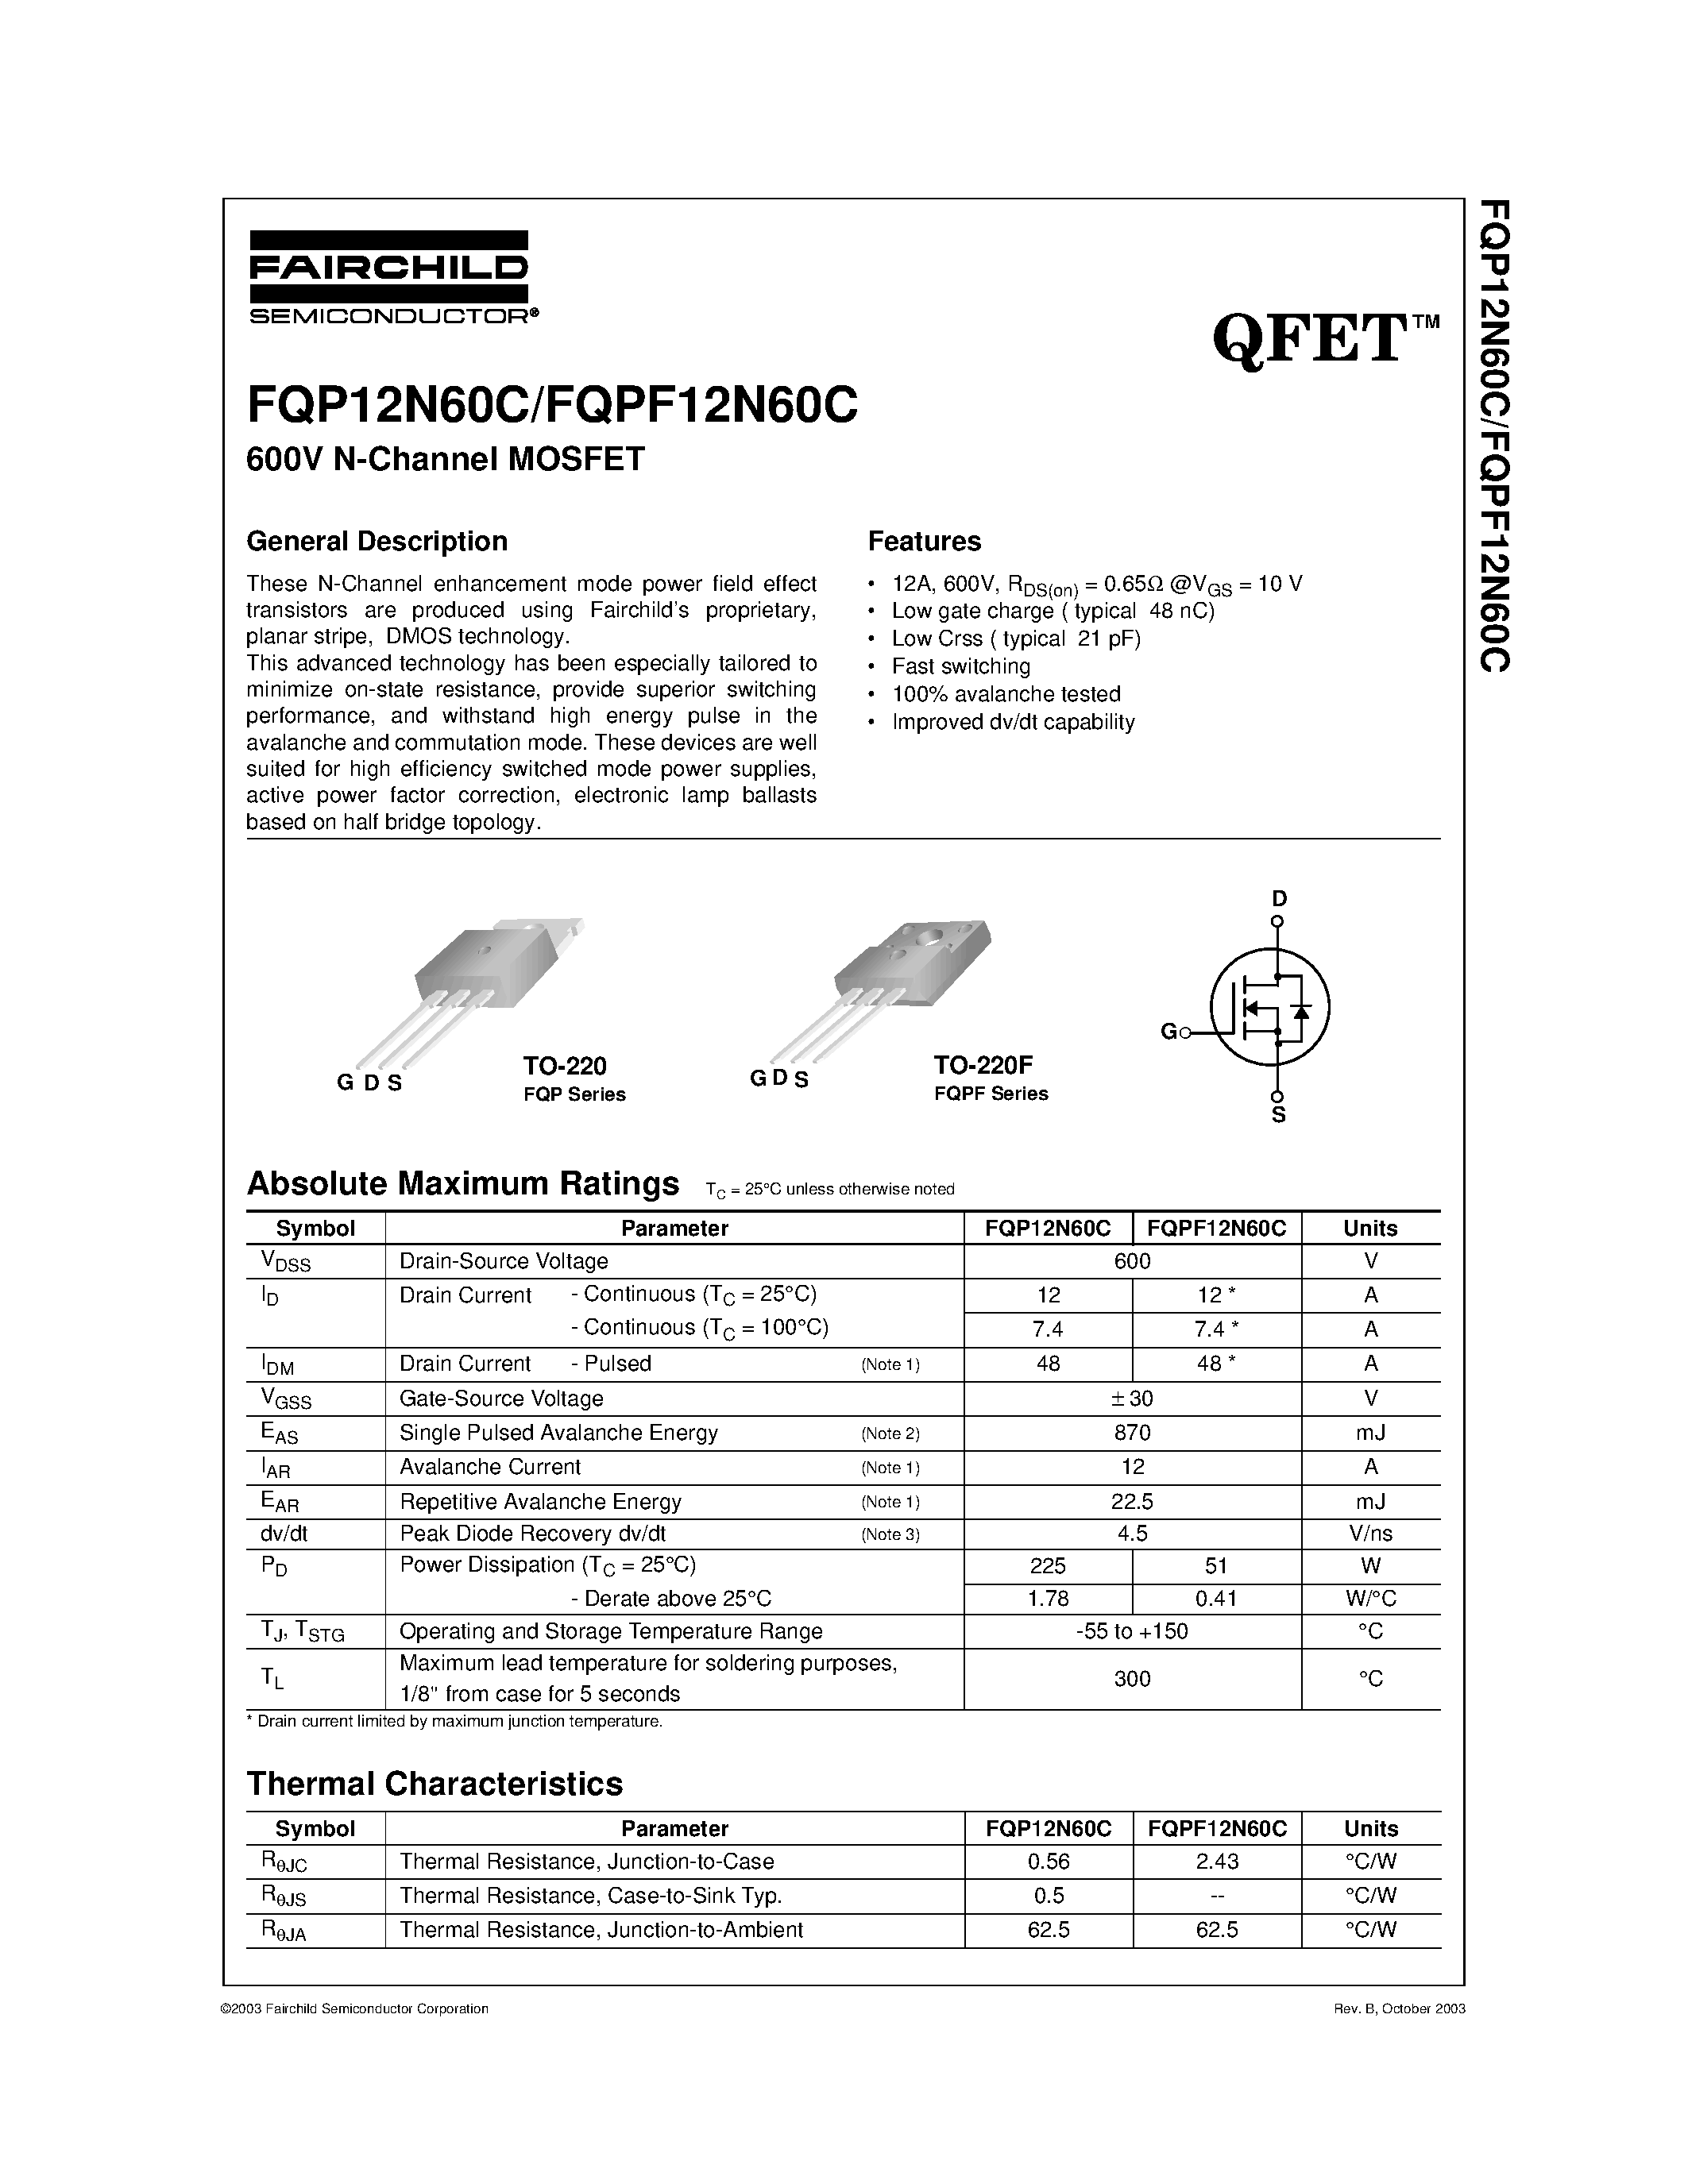 Datasheet FQPF12N60C - FQP12N60C/FQPF12N60C page 1